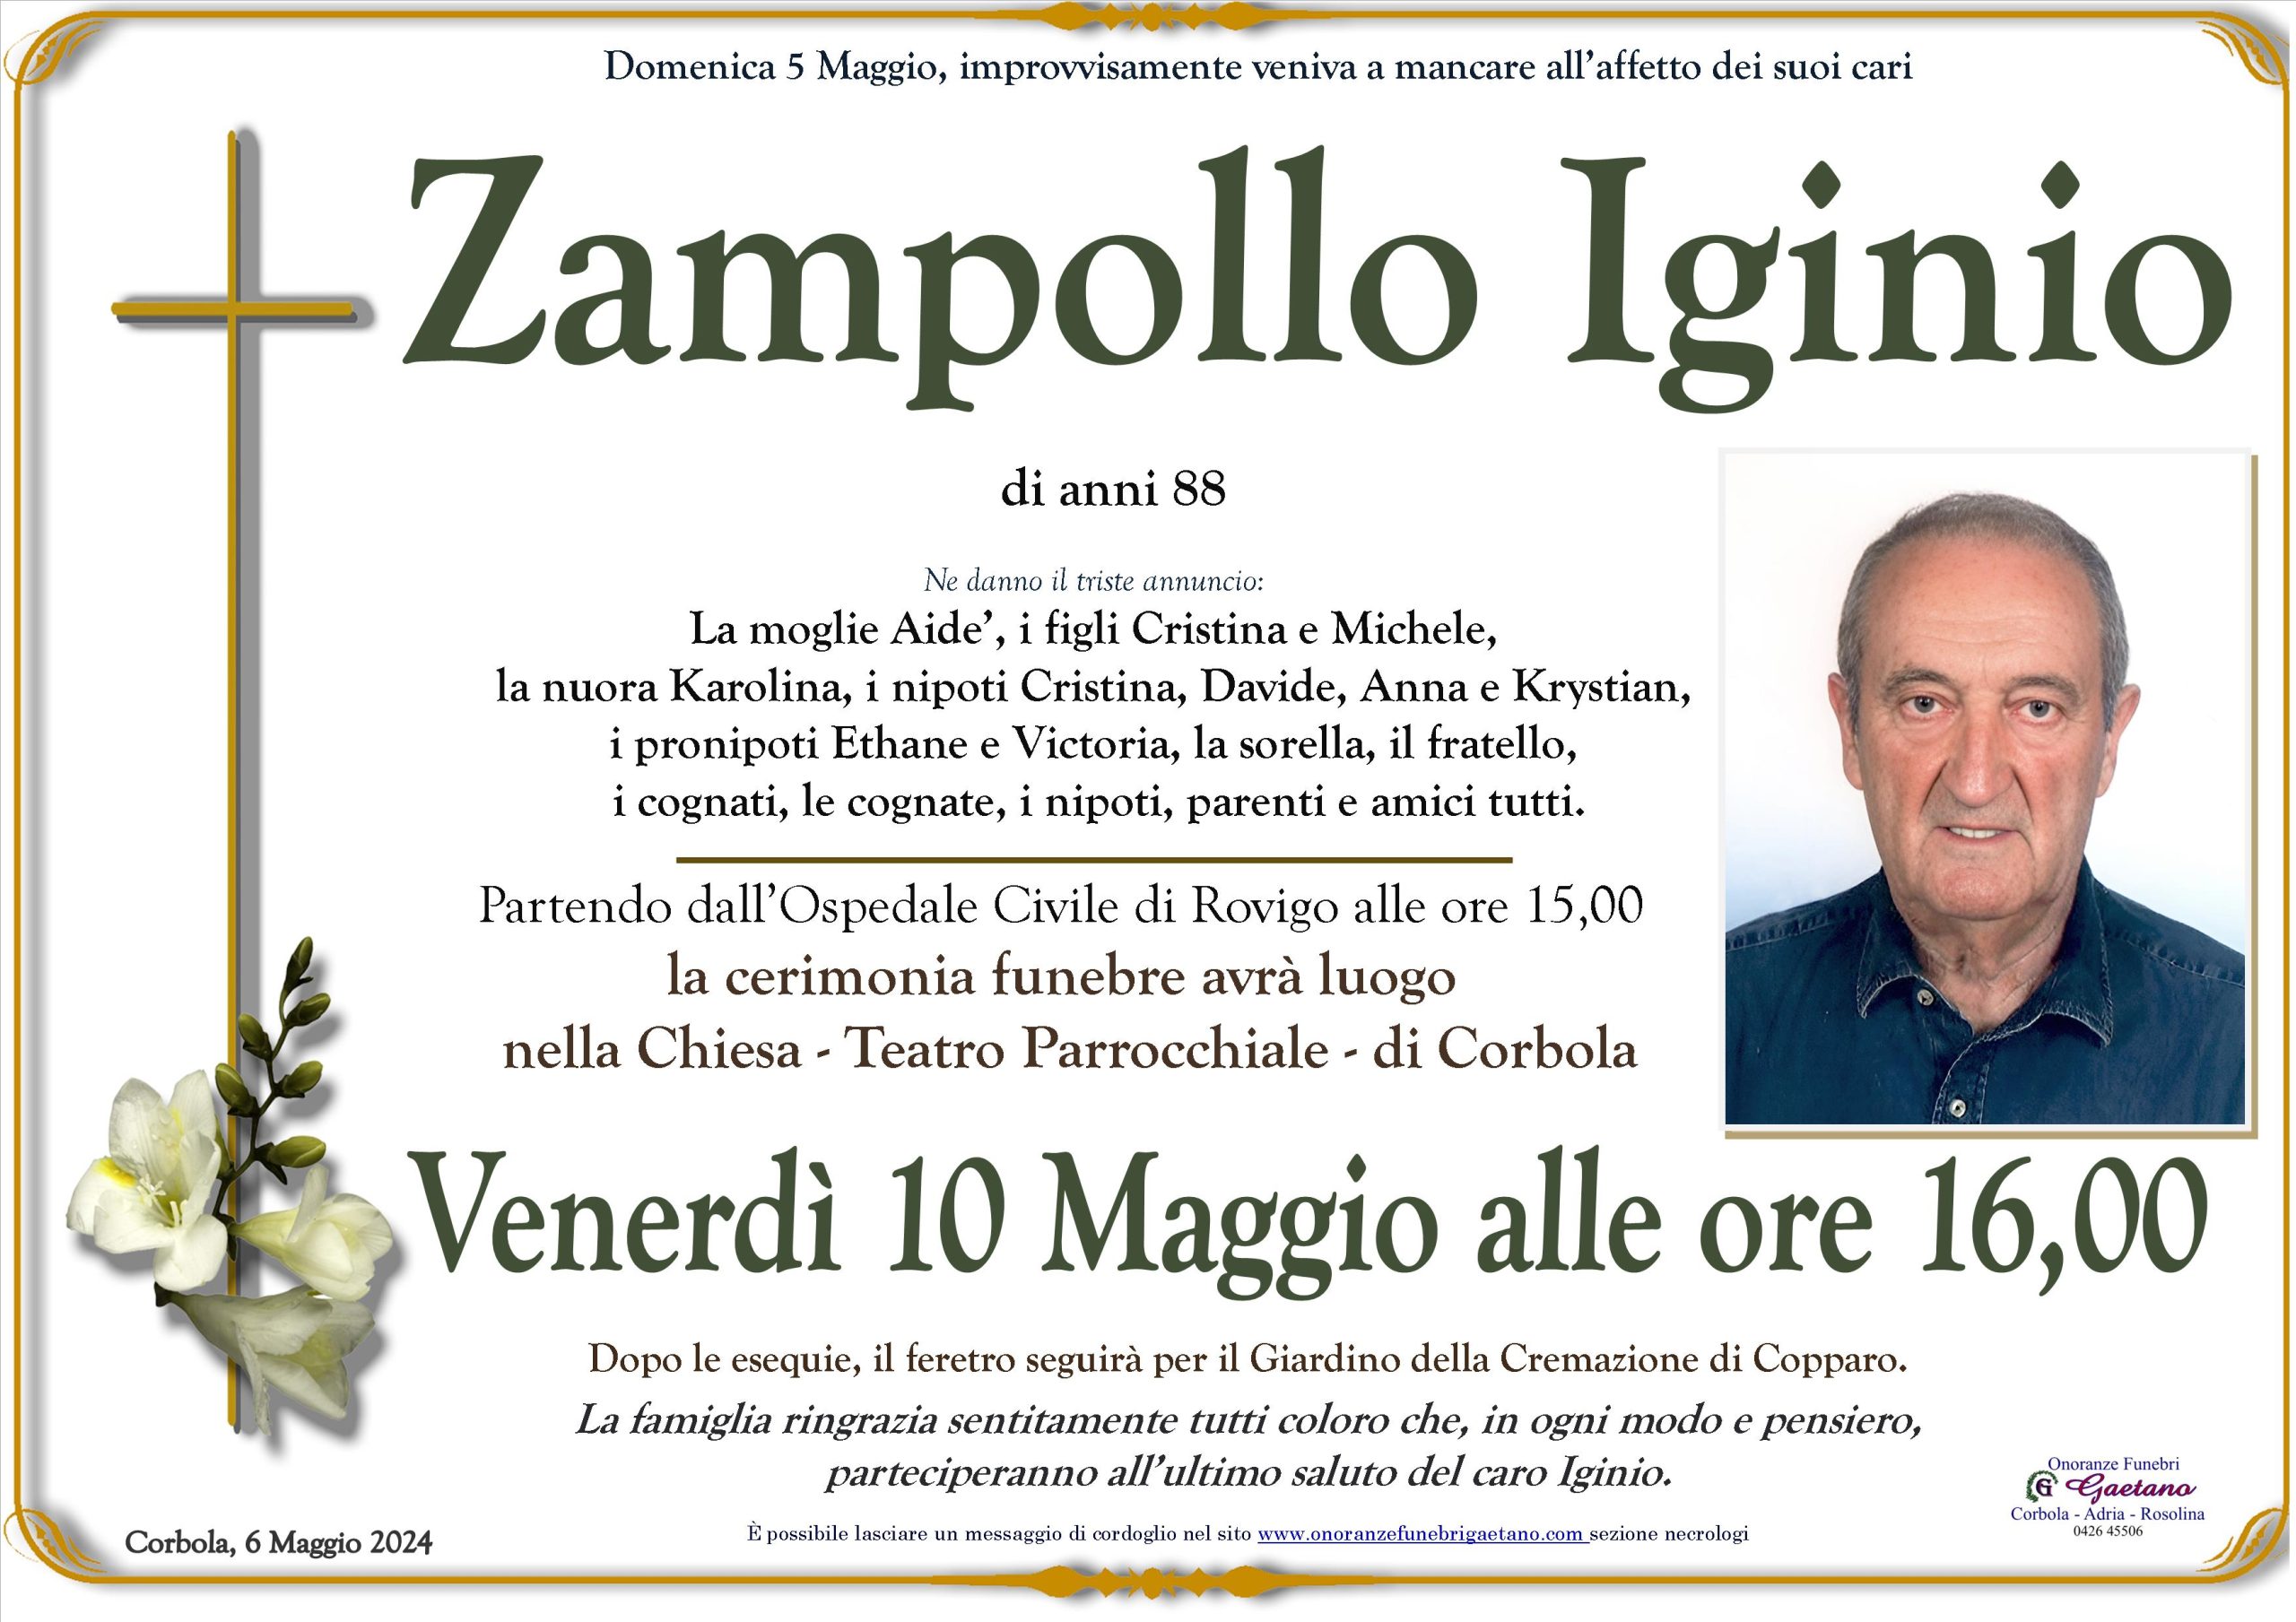 Zampollo Iginio